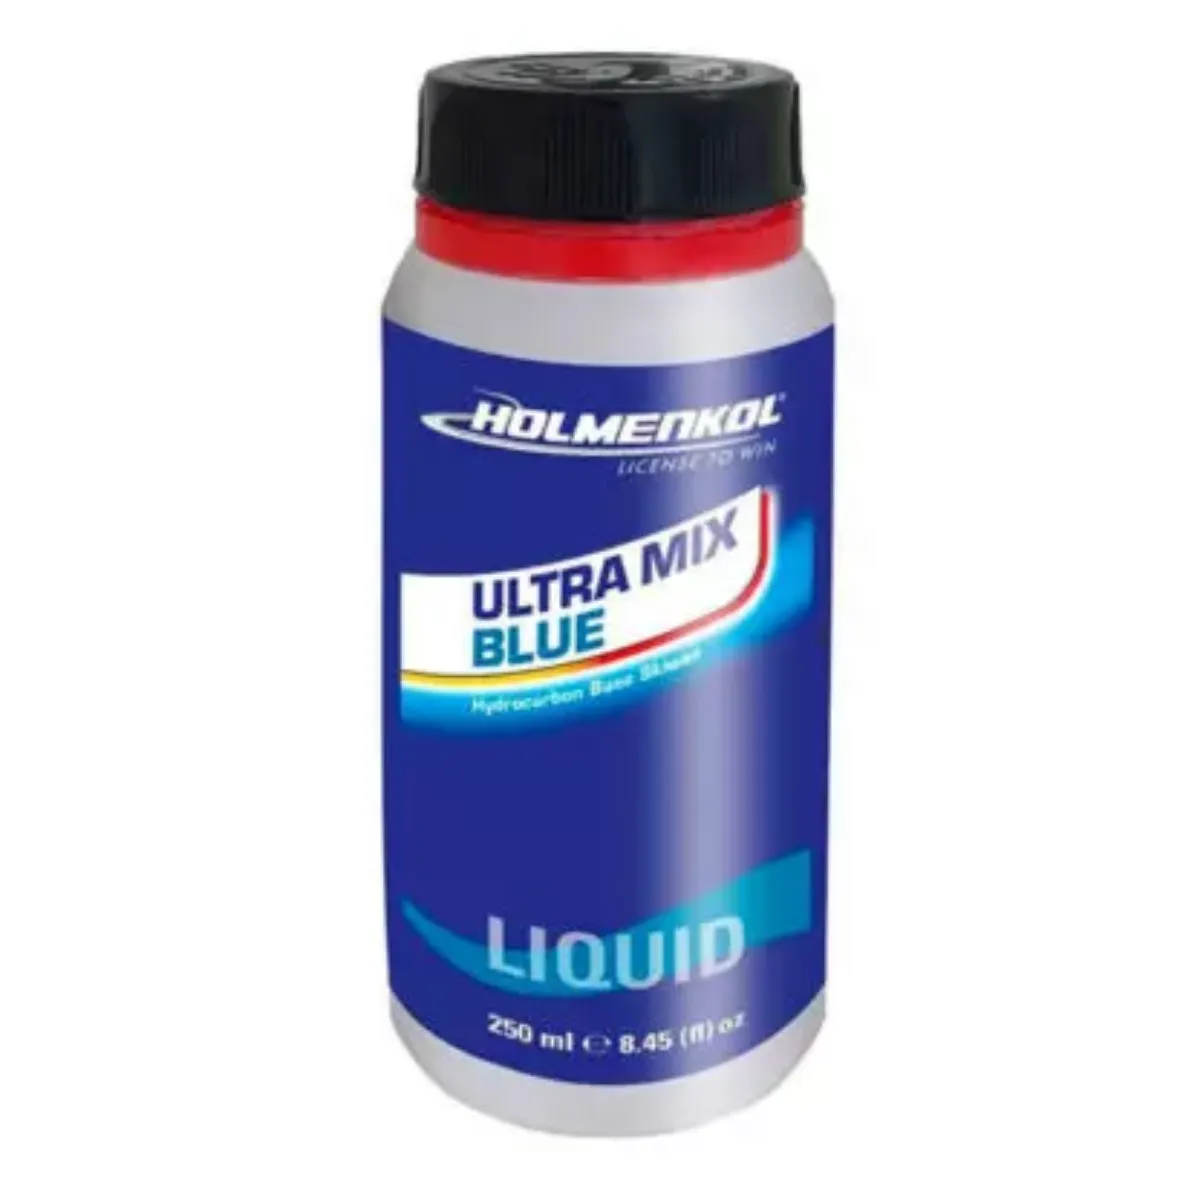 Bilde av Ultramix BLUE liquid 250ml